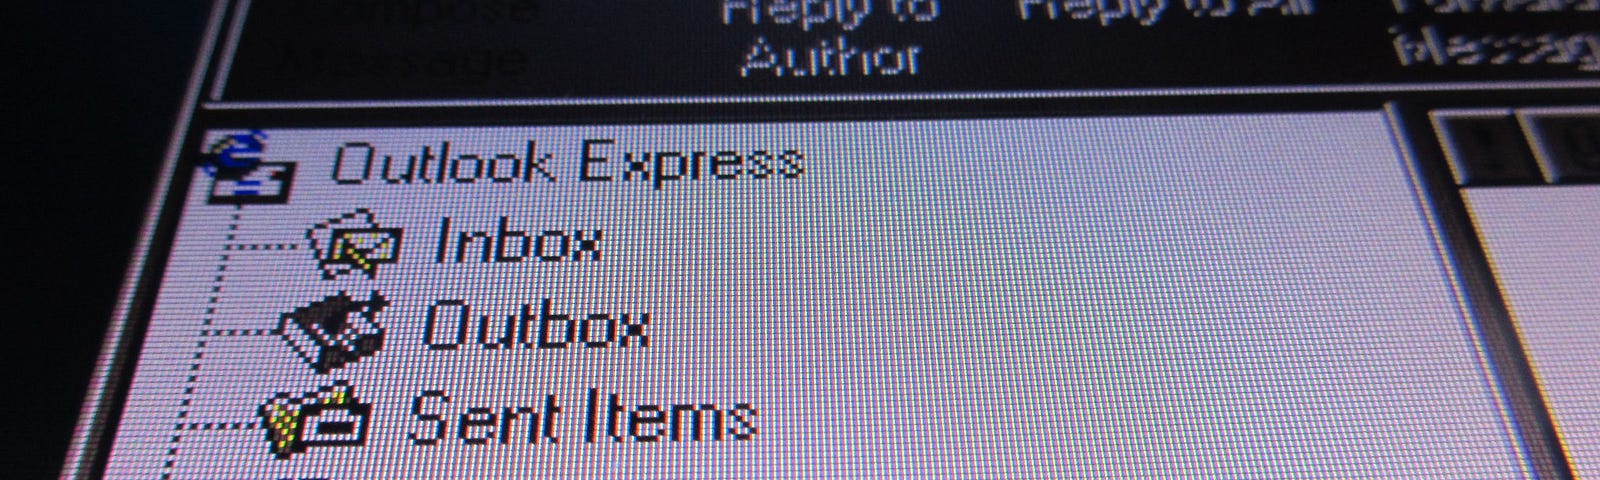 Screenshot Outlook Express